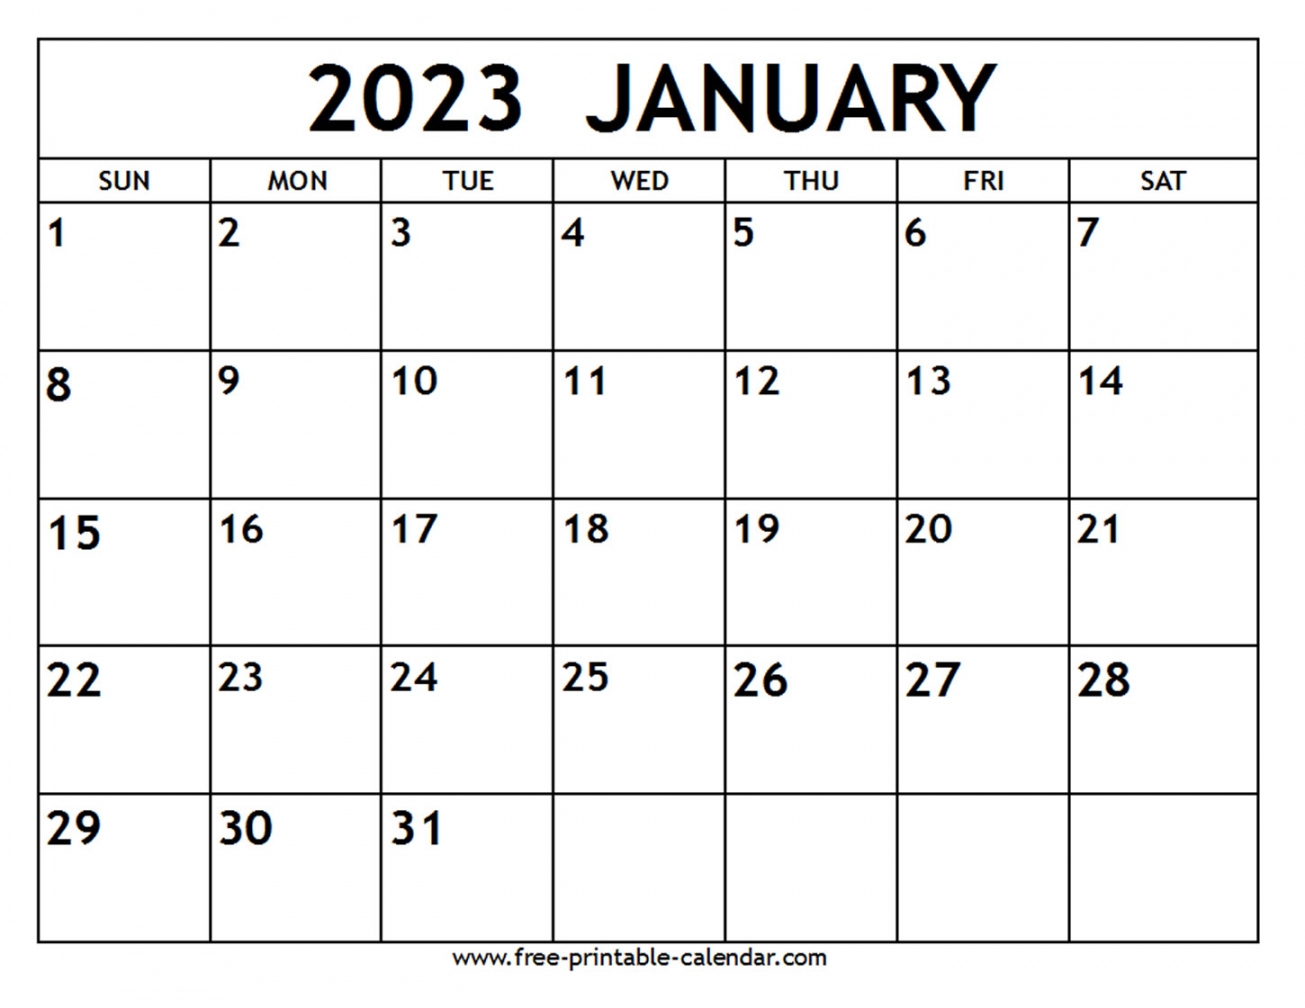 January 2023 Calendar Printable Free - Printable - January  Calendar - Free-printable-calendar